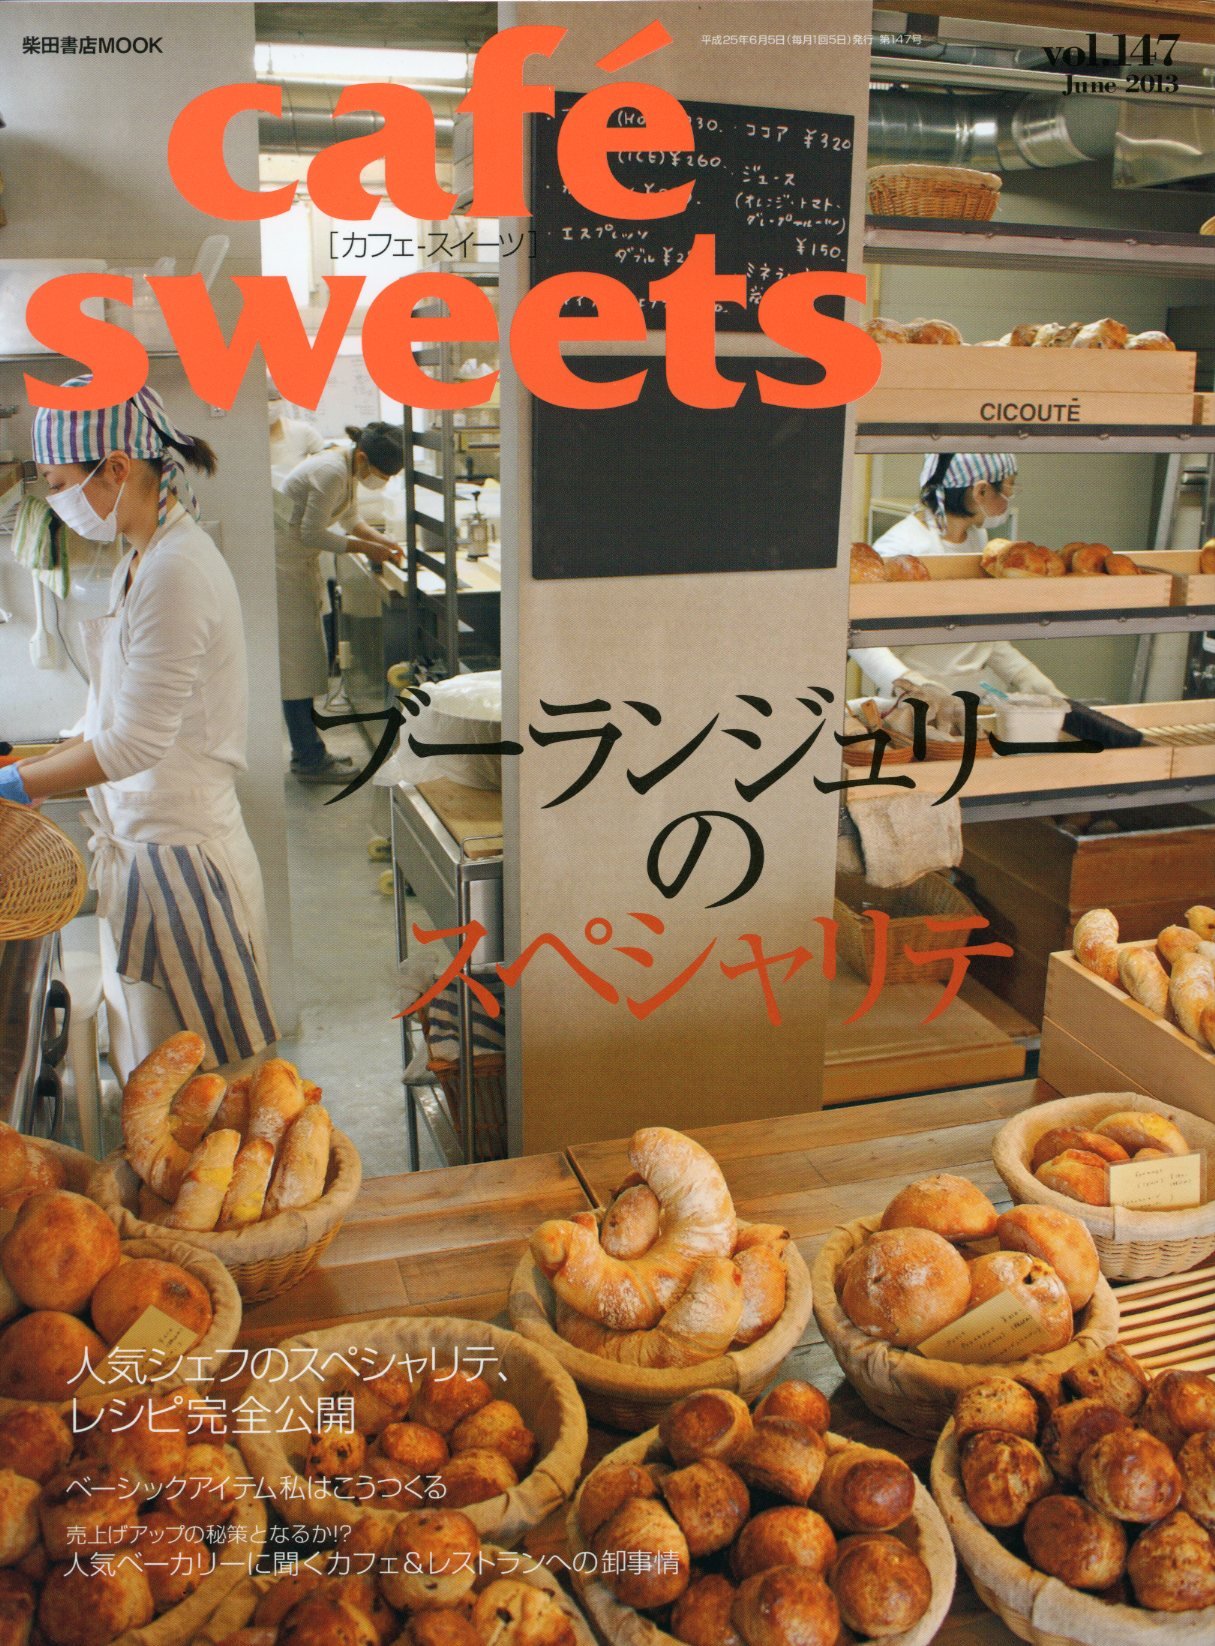 良書網cafe　sweet　9784388808090　vol.147　Code/ISBN:　出版社:柴田書店